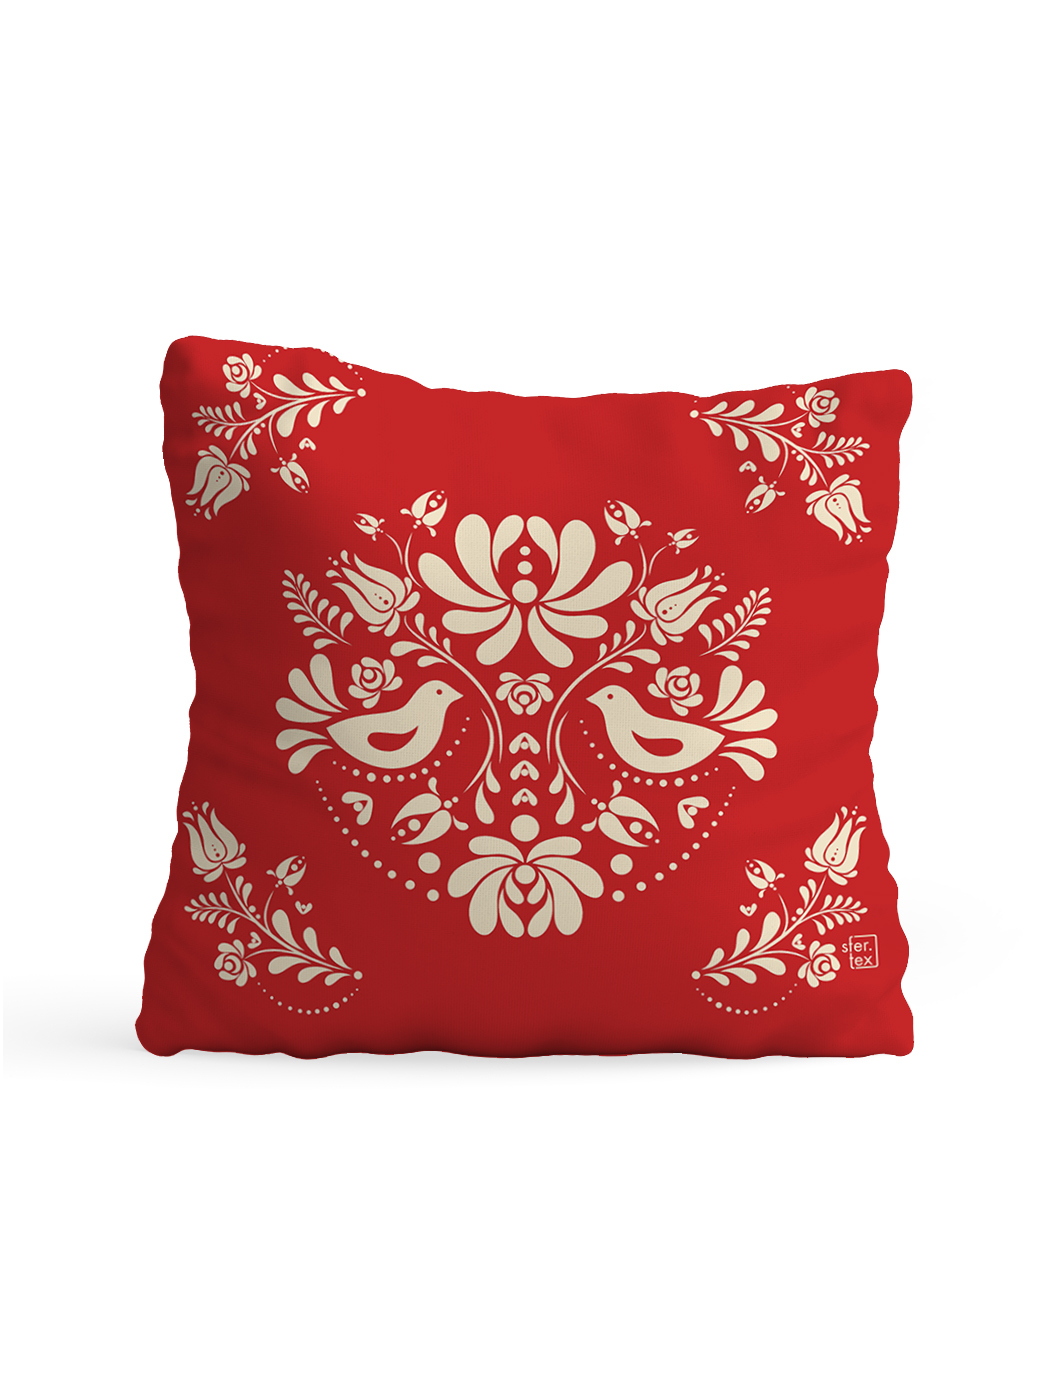 фото Декоративная подушка флис двусторонняя орнамент красная sfer.tex 1713505